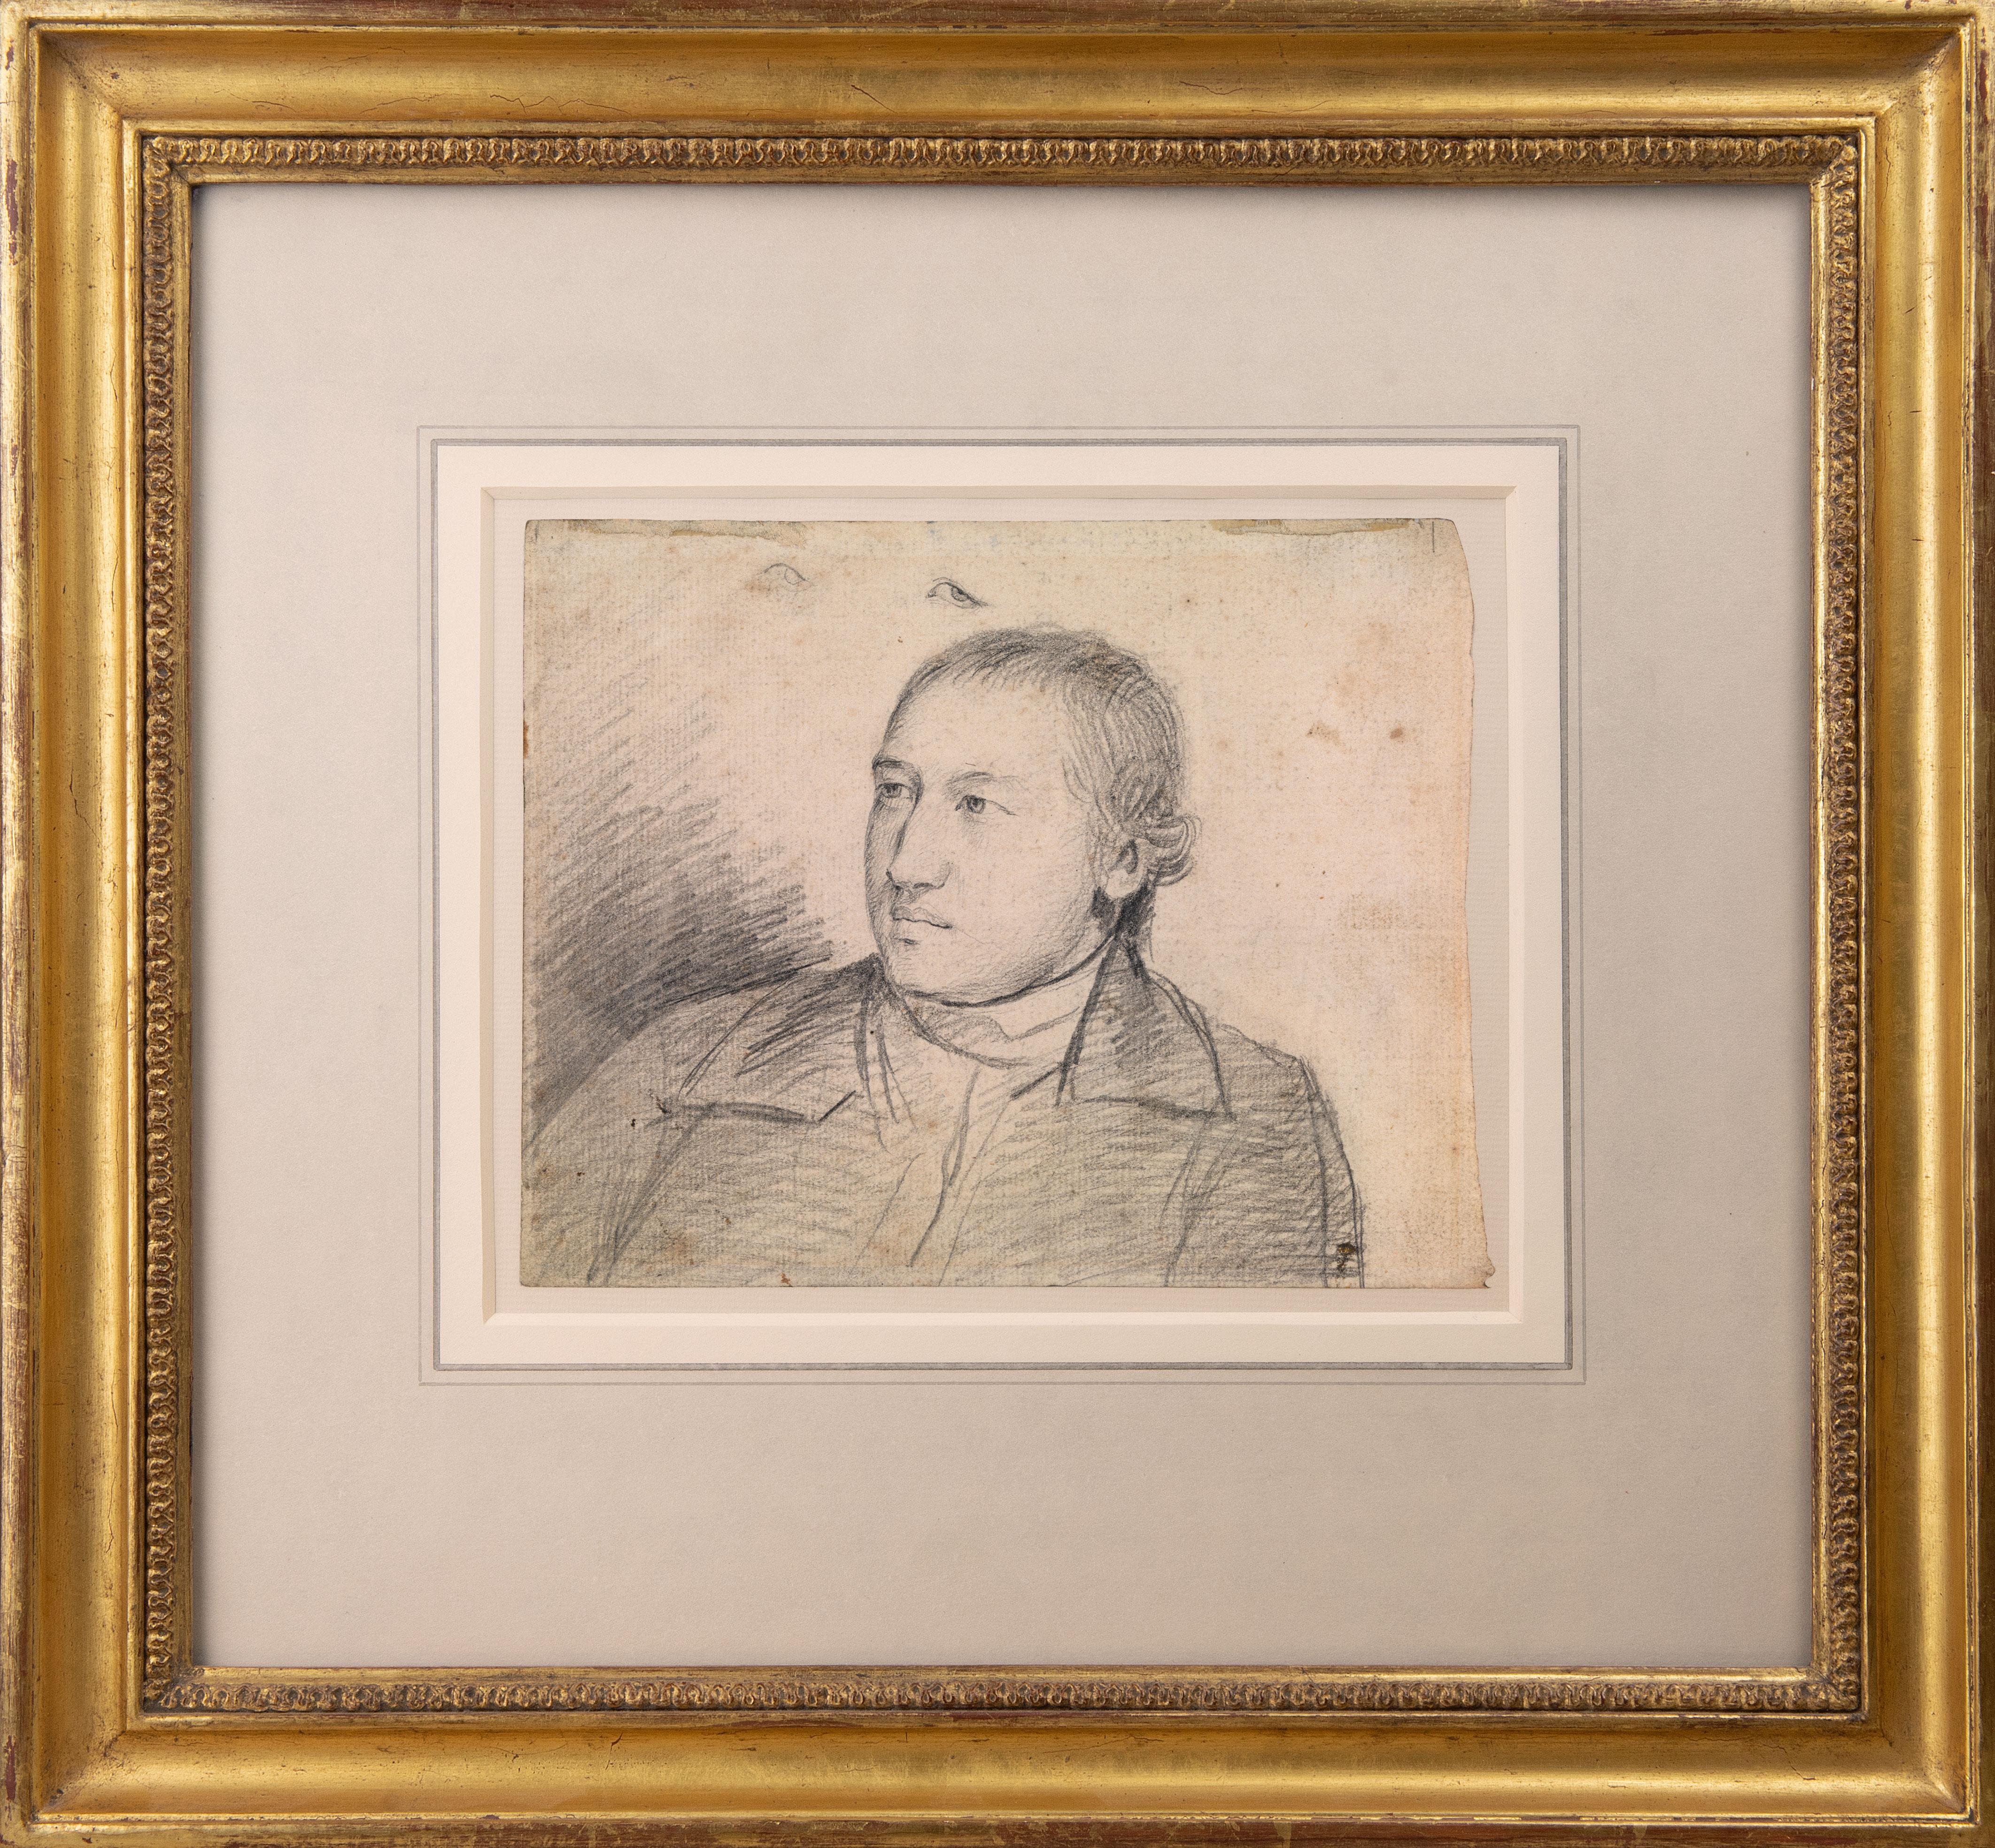 Porträtzeichnung des Rev. aus dem 18. Jahrhundert William Atkinson – Art von George Romney